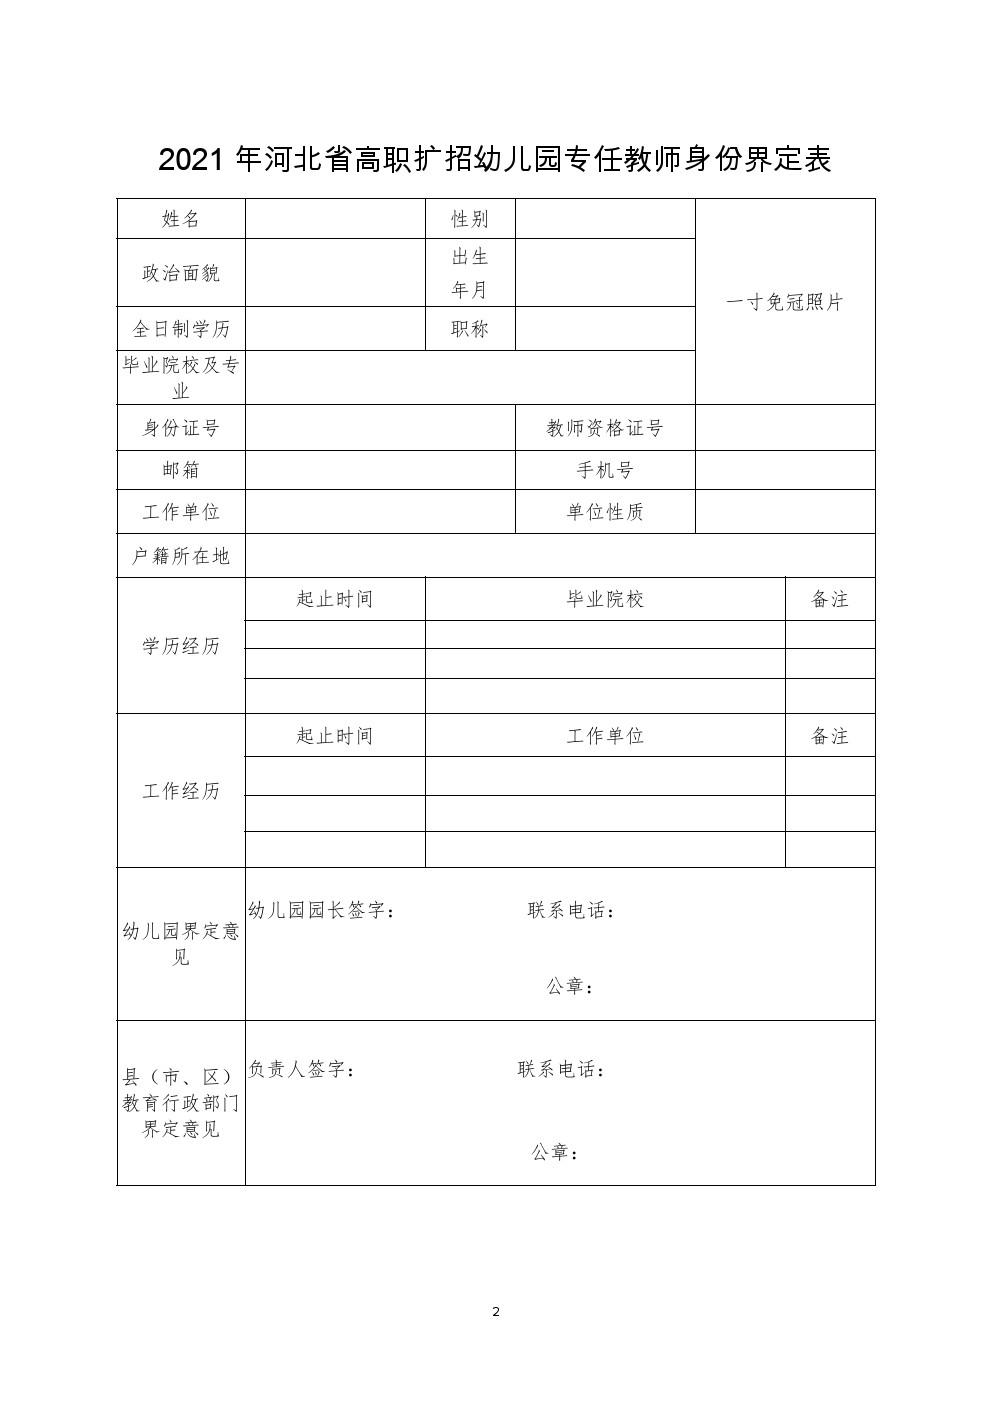 2021年河北省高职扩招幼儿园专任教师身份界定表 图1